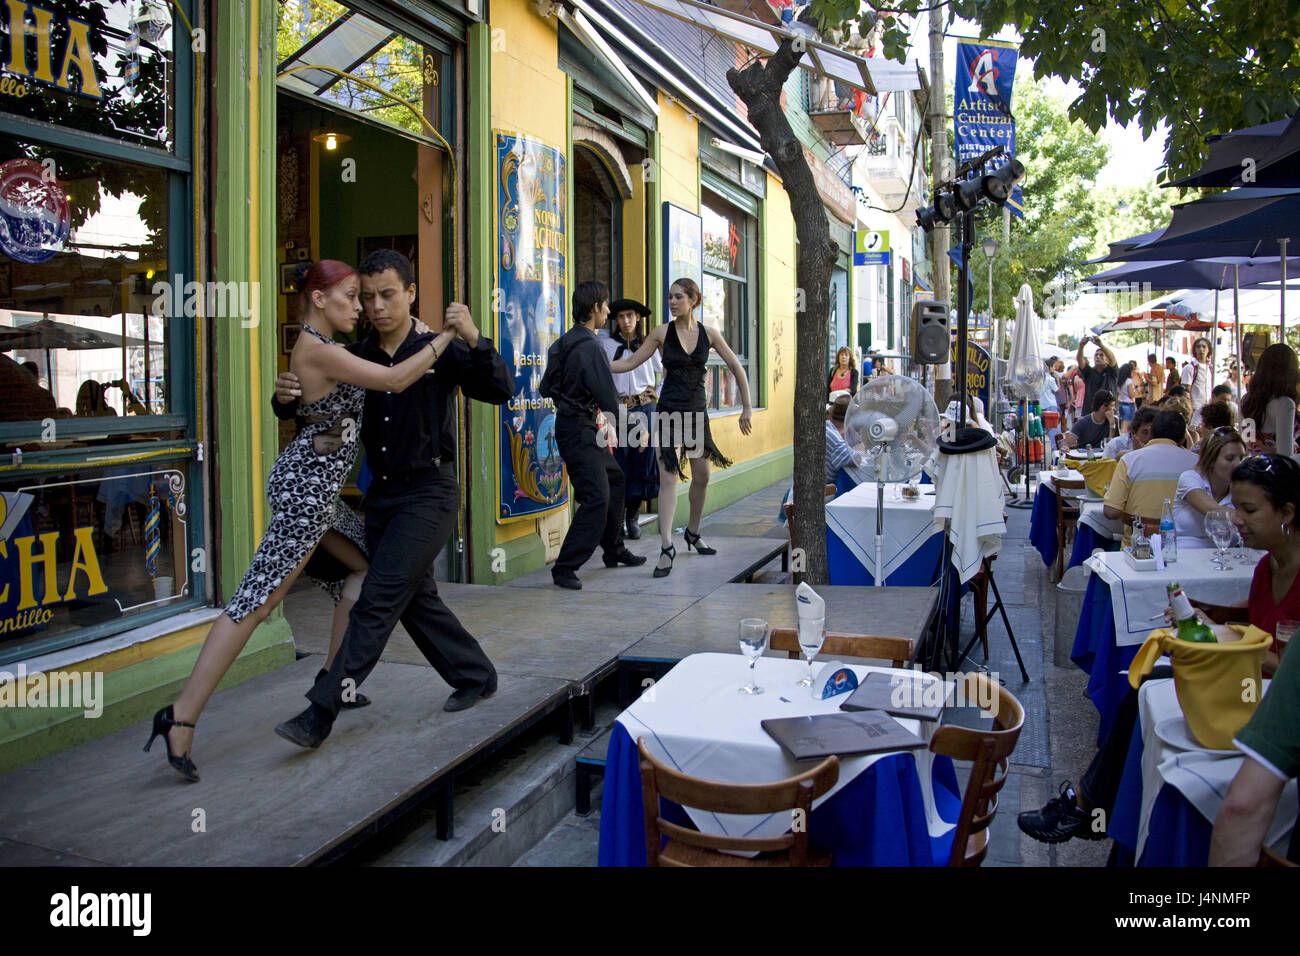 L'ARGENTINE, Buenos Aires, partie de la ville de La Boca, café de la rue, des couples de danse, tango, pose, le modèle ne libération, Banque D'Images